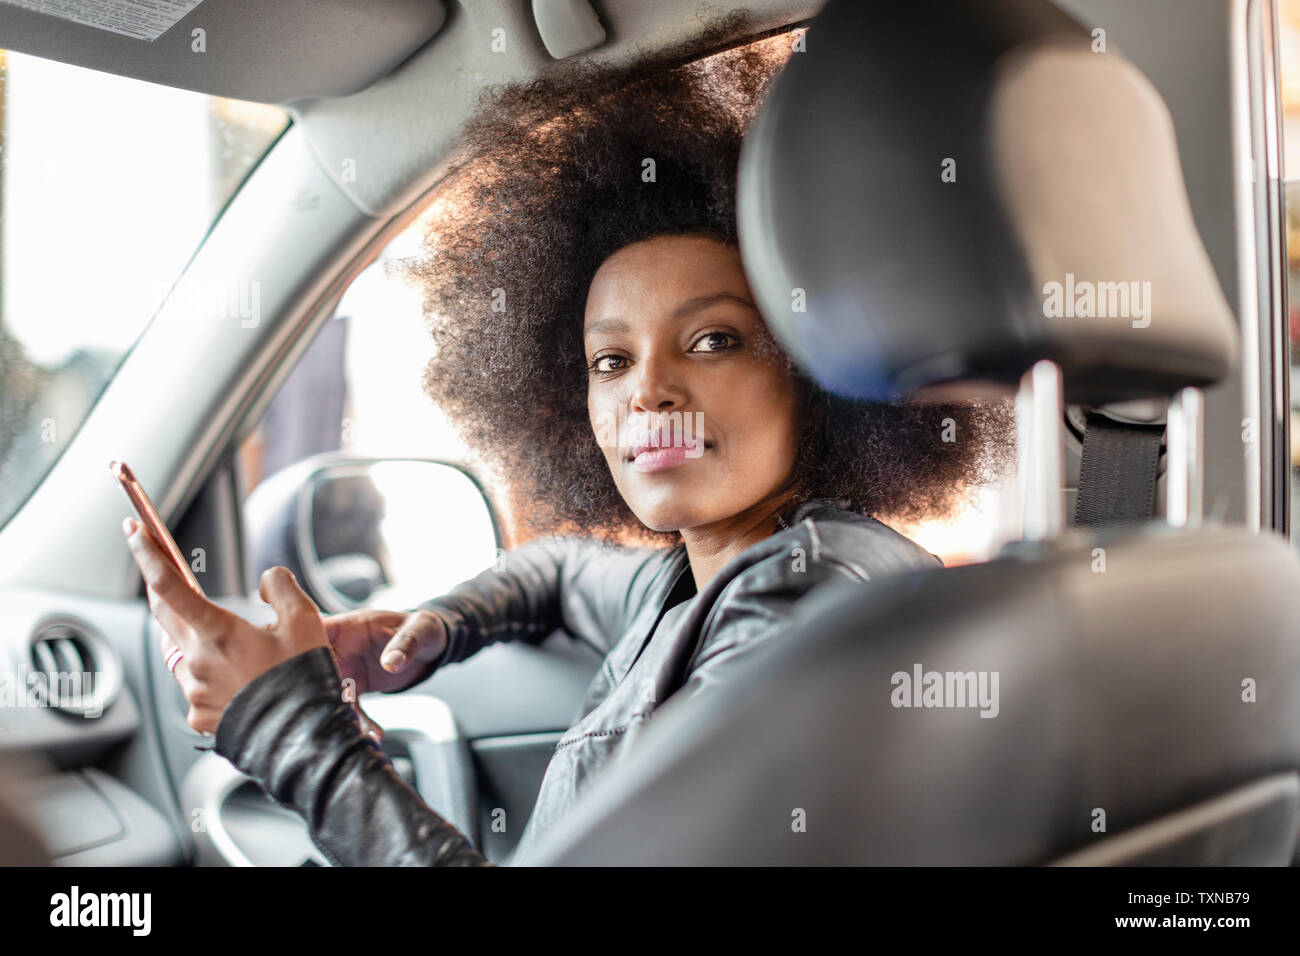 Jeune femme avec des cheveux afro en siège passager voiture holding smartphone, portrait Banque D'Images